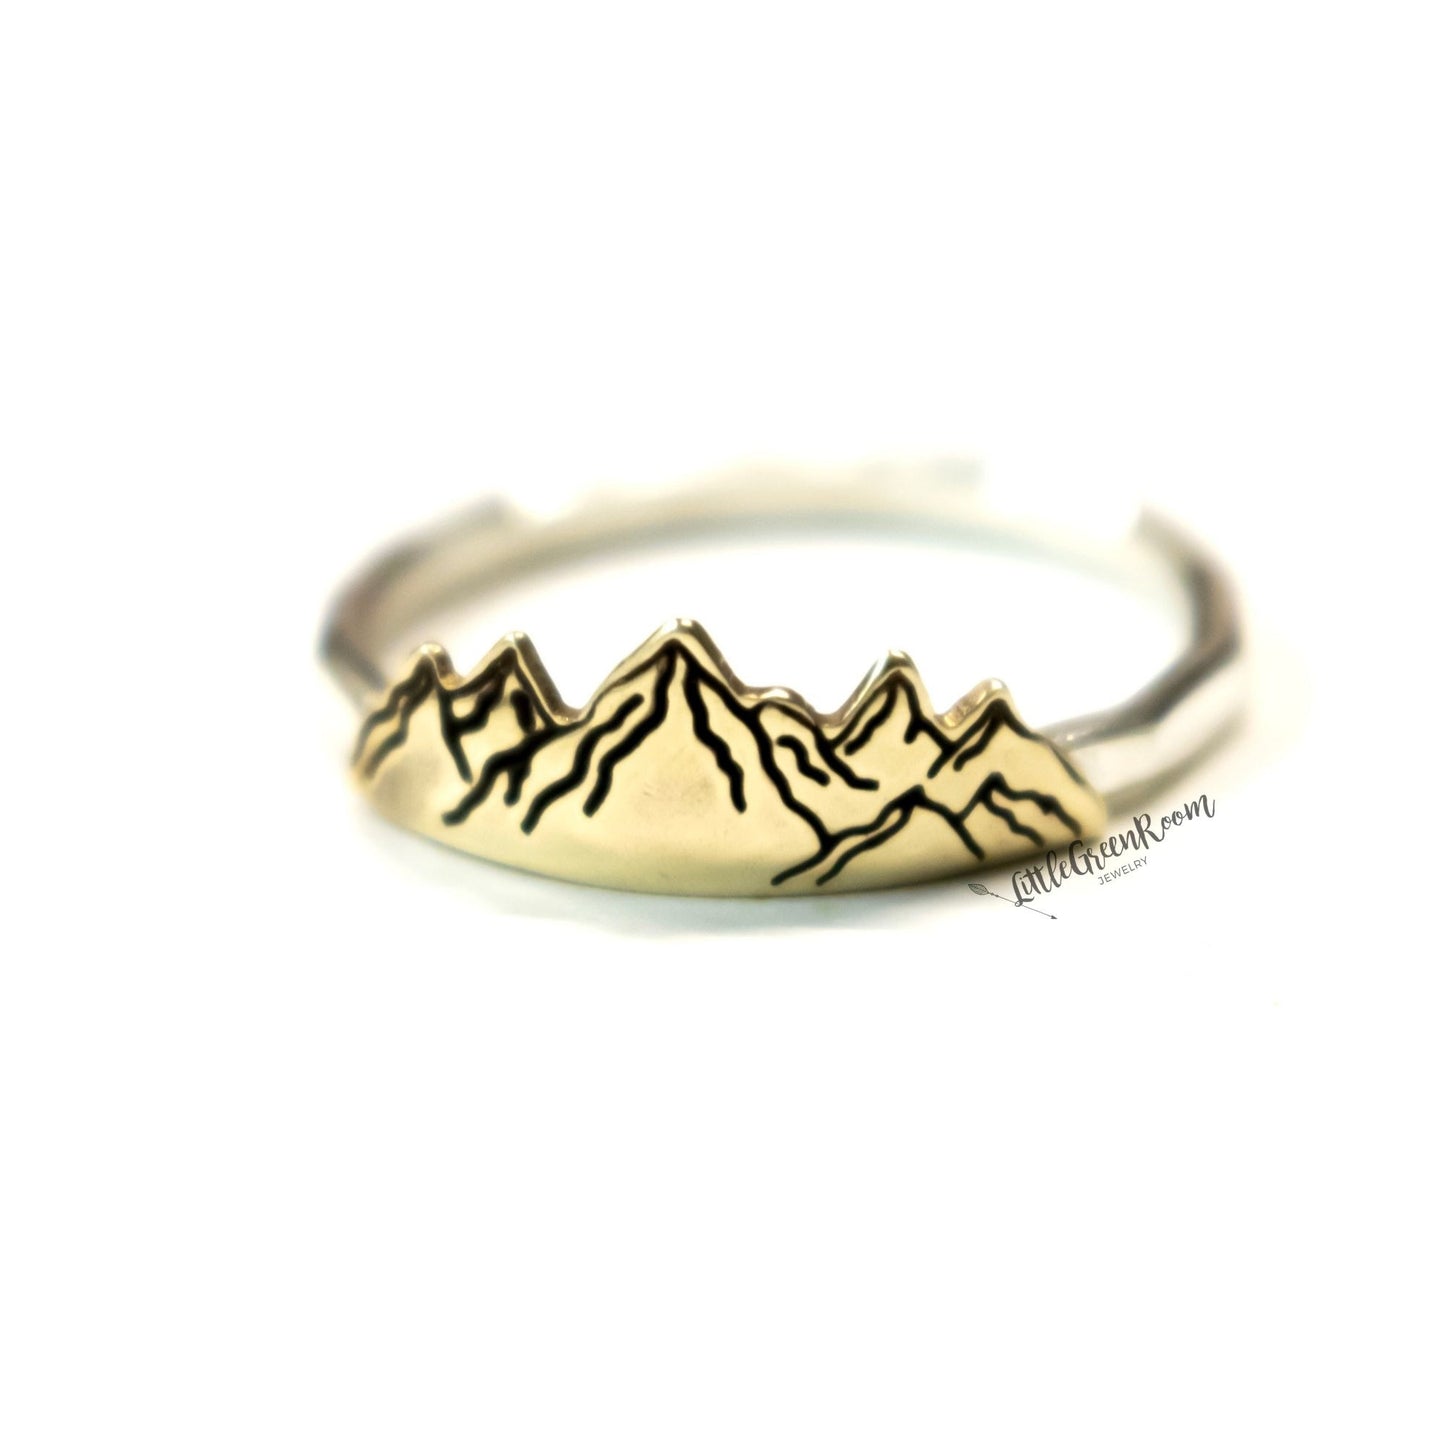 Stunning Mountain Range Ring-Womens-LittleGreenRoomJewelry-LittleGreenRoomJewelry